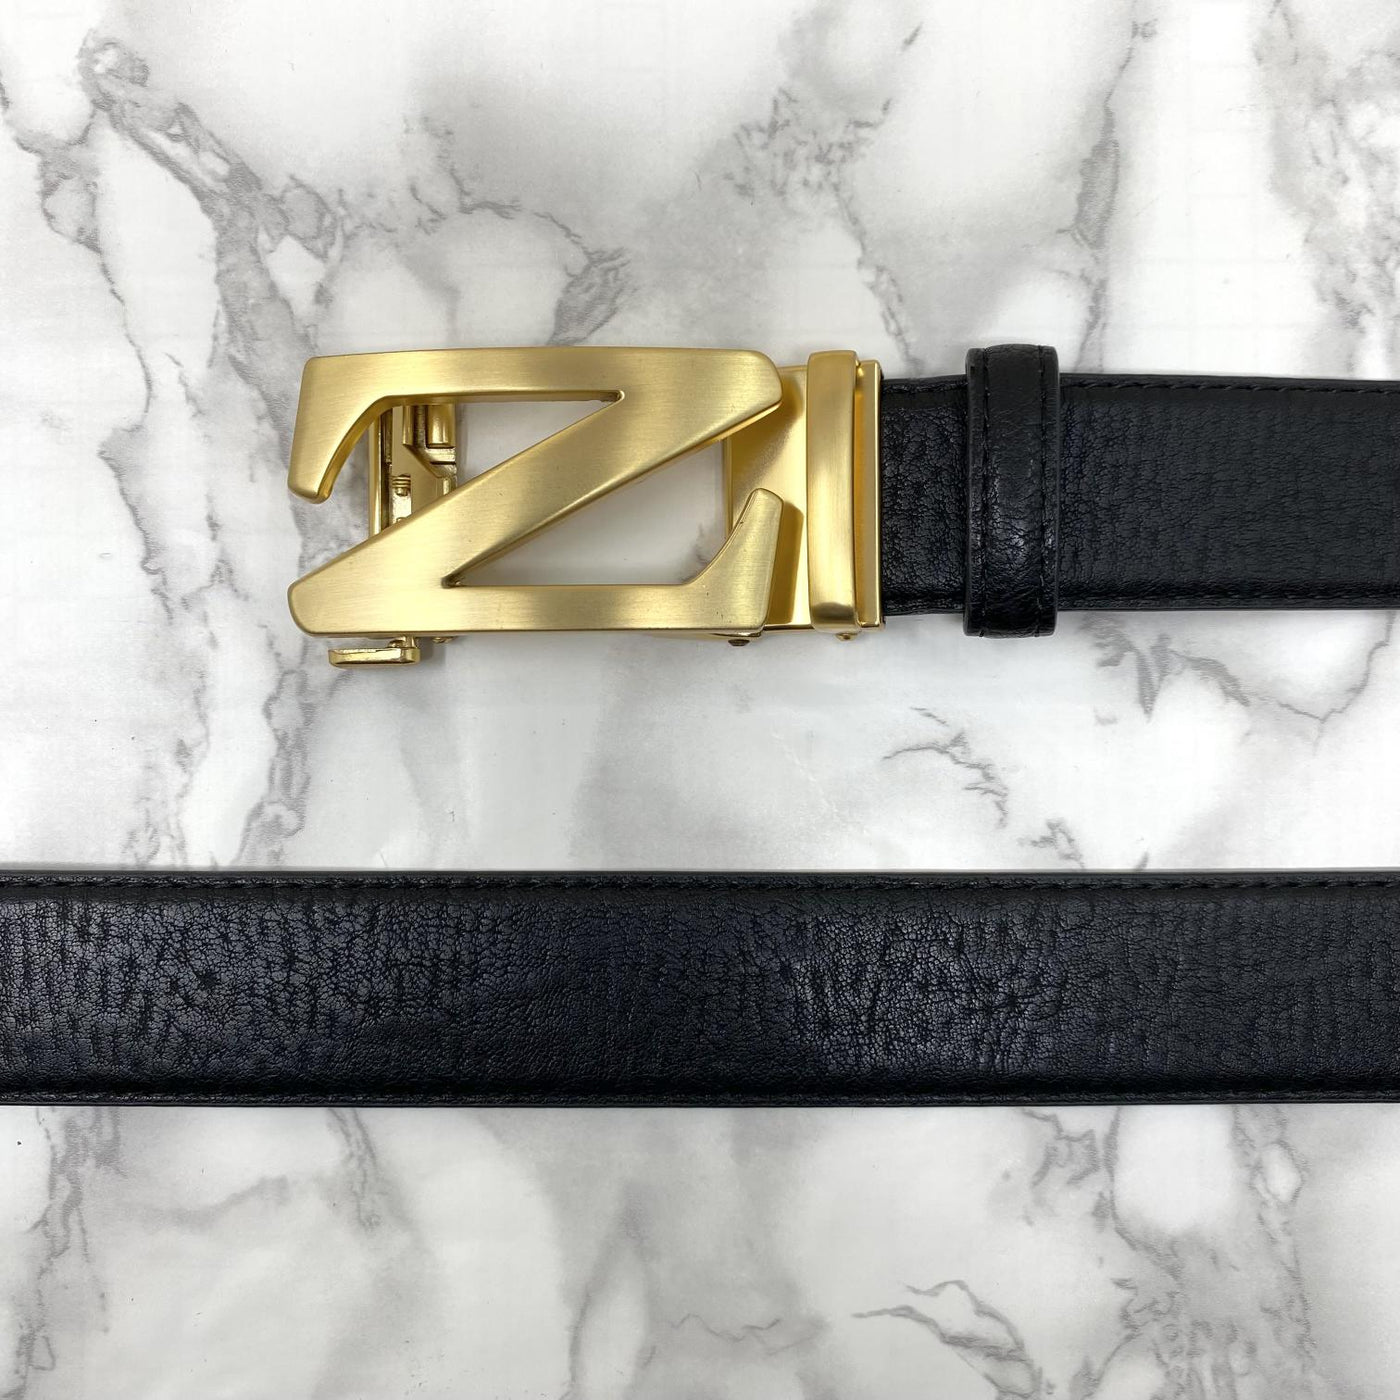 Casual Z-Shape Adjustable Auto Belt For Men-UniqueandClassy